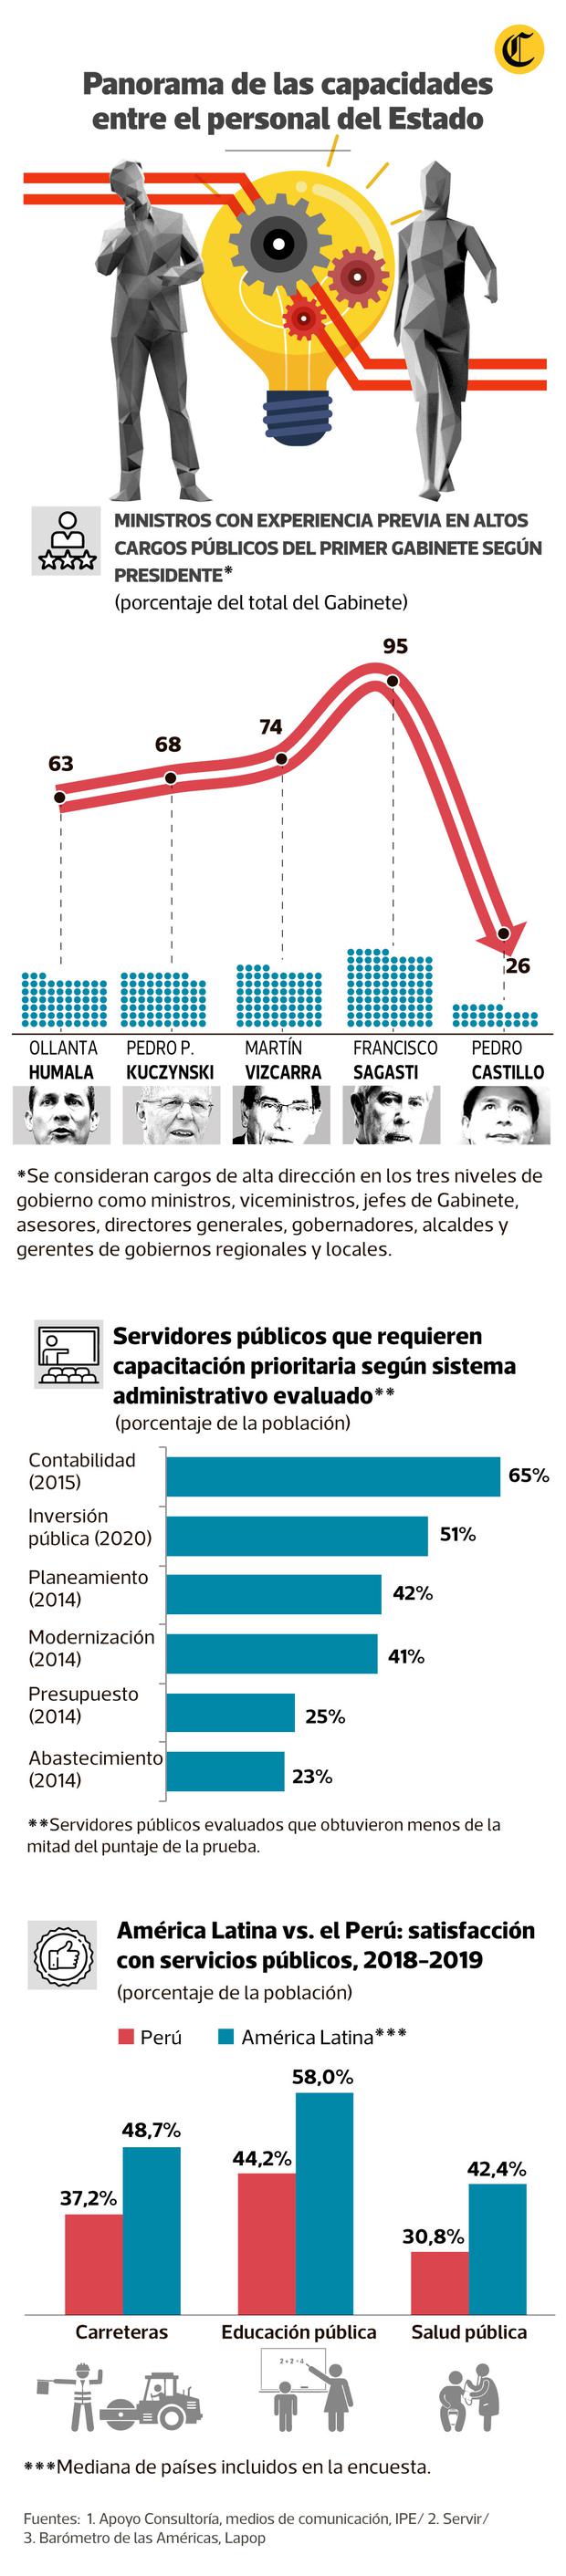 Panorama de las capacidades entre el personal del Estado. (Fuente: Servir / Infografía: Antonio Tarazona y Raúl Rodríguez)